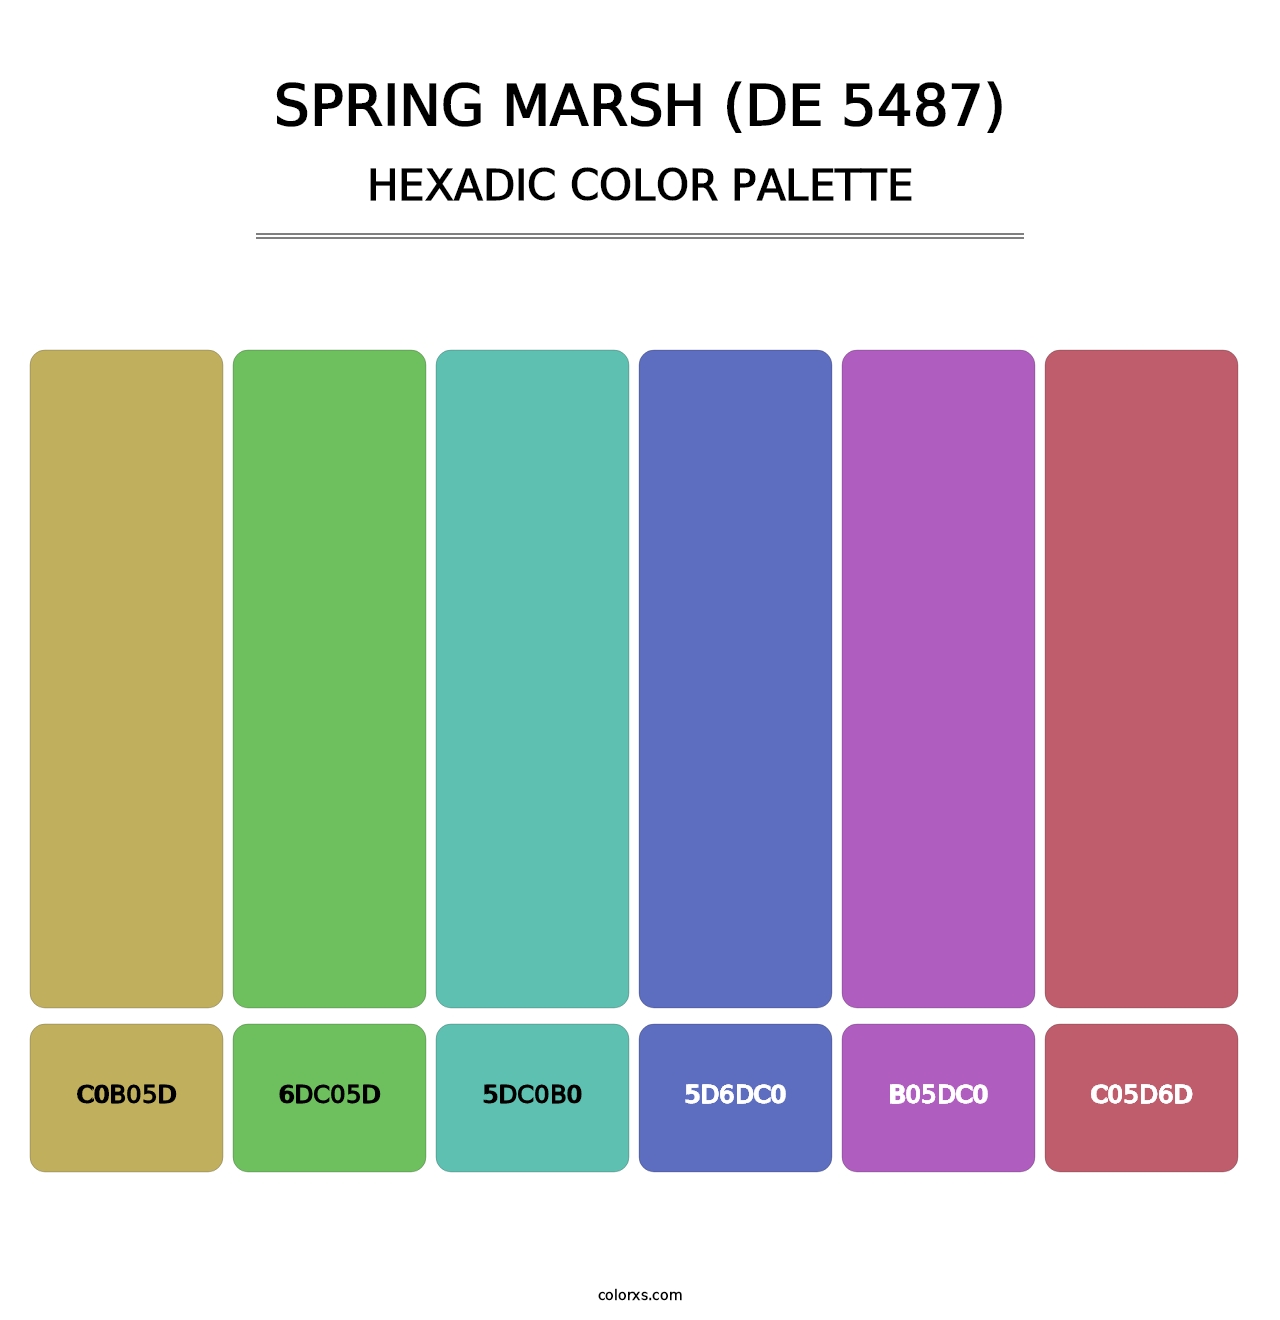 Spring Marsh (DE 5487) - Hexadic Color Palette